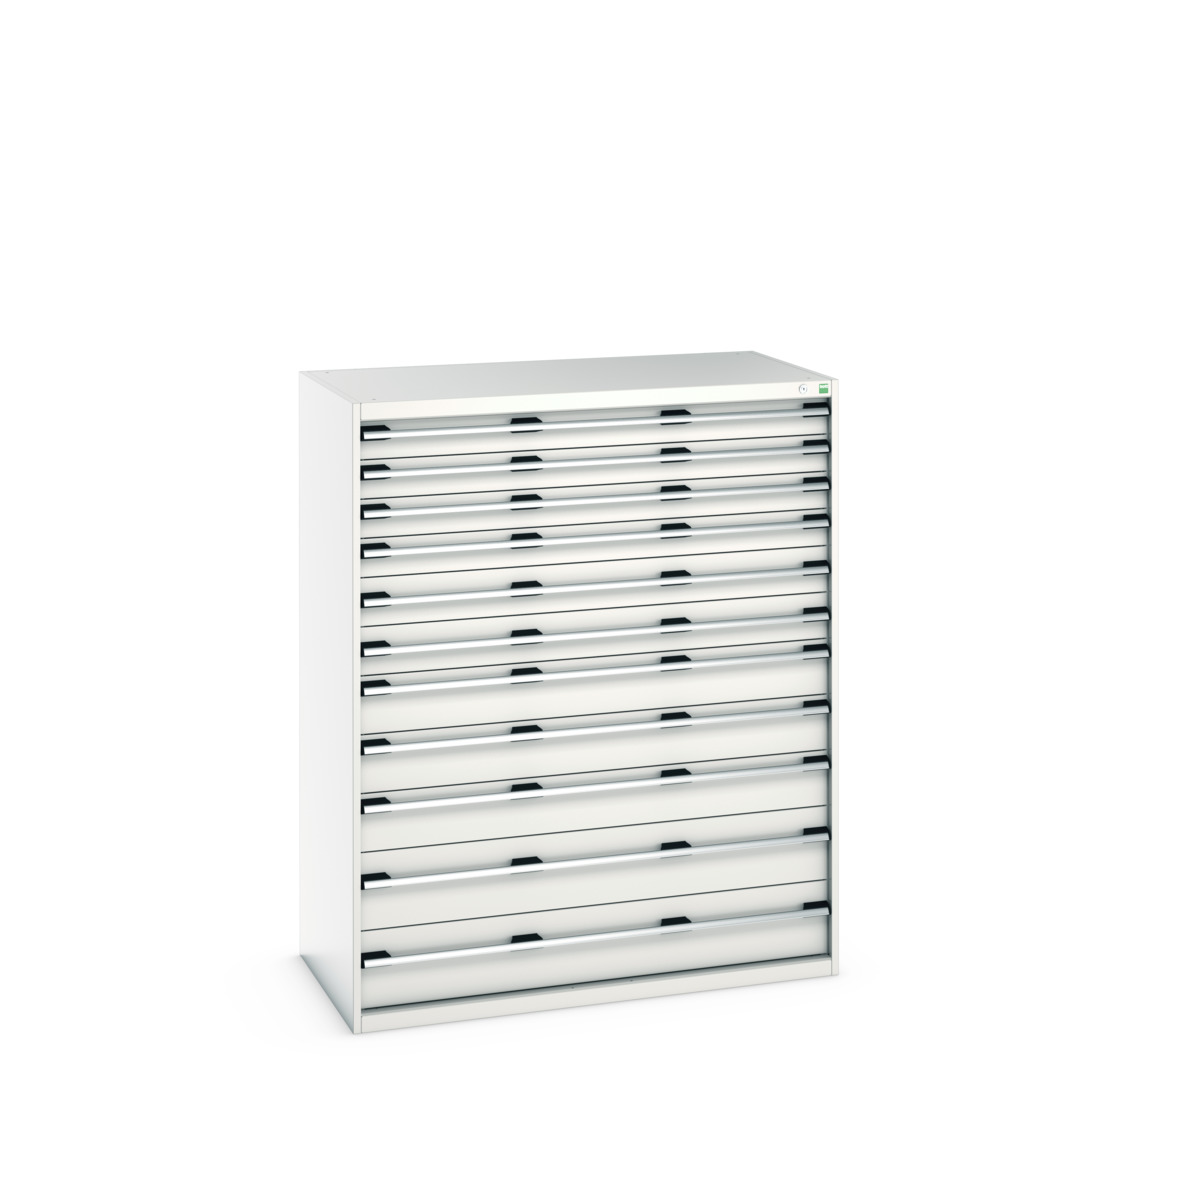 40030029.16V - cubio drawer cabinet